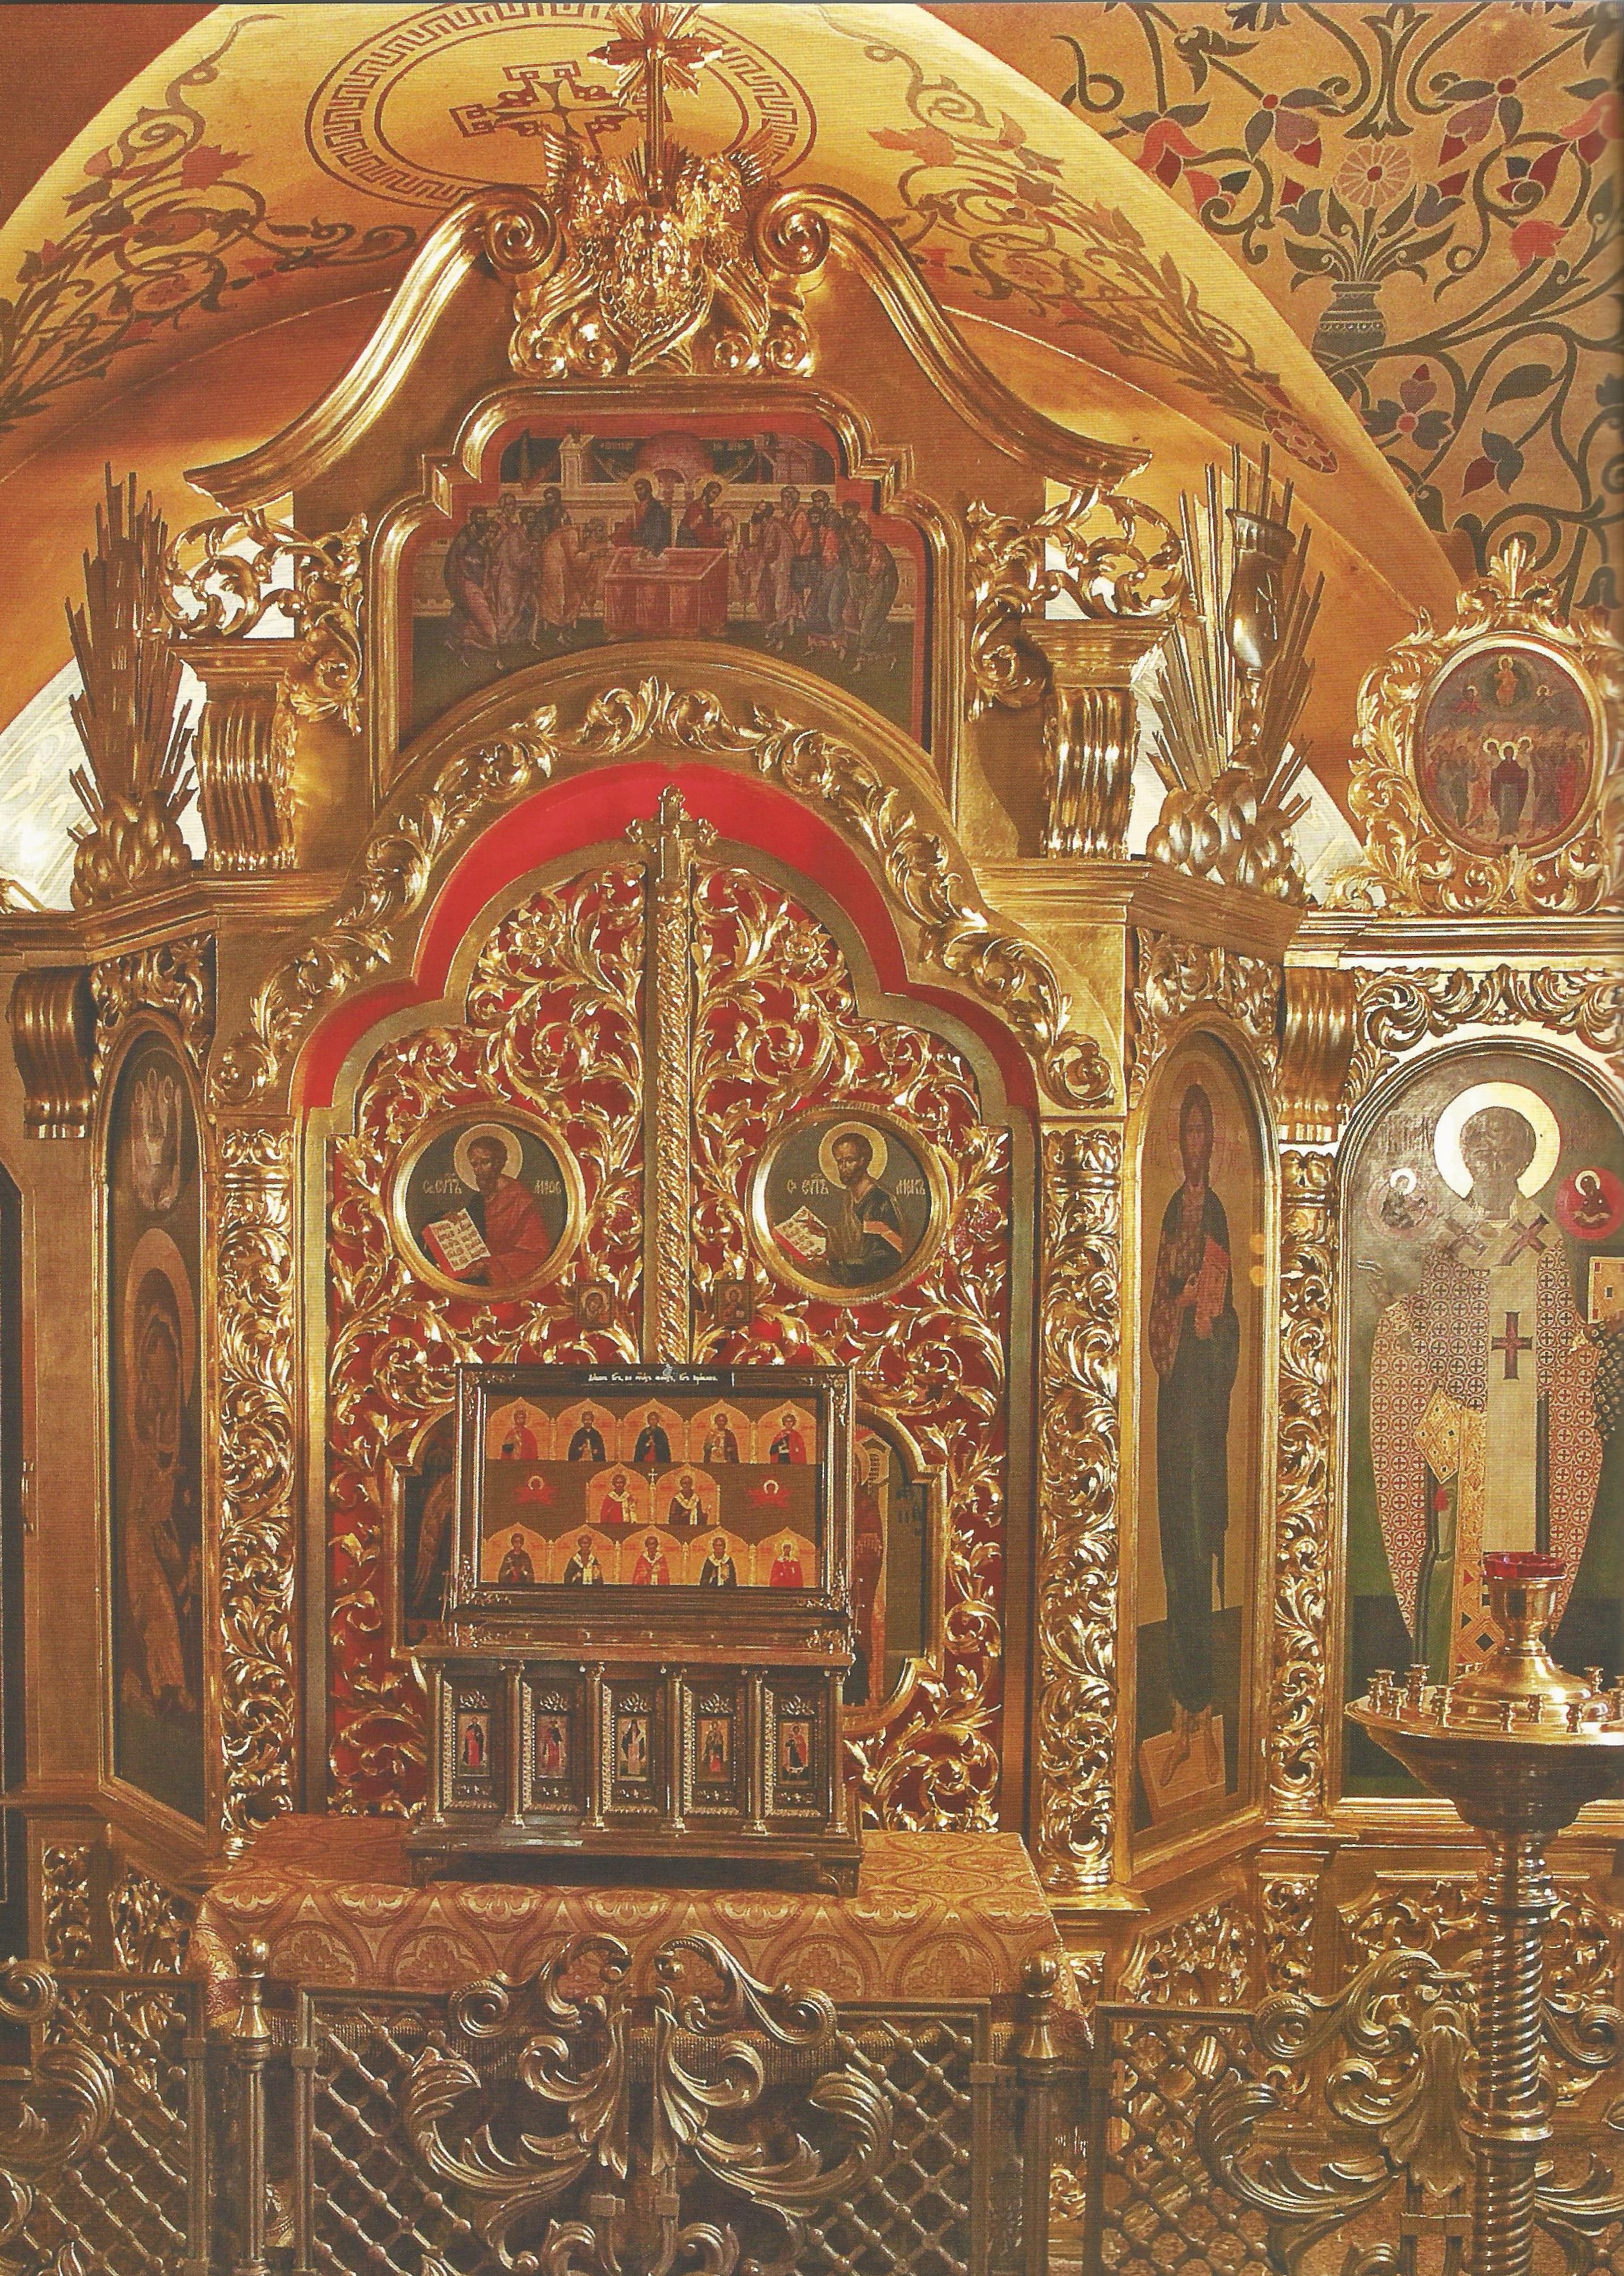 храм всех святых на кулишках в москве